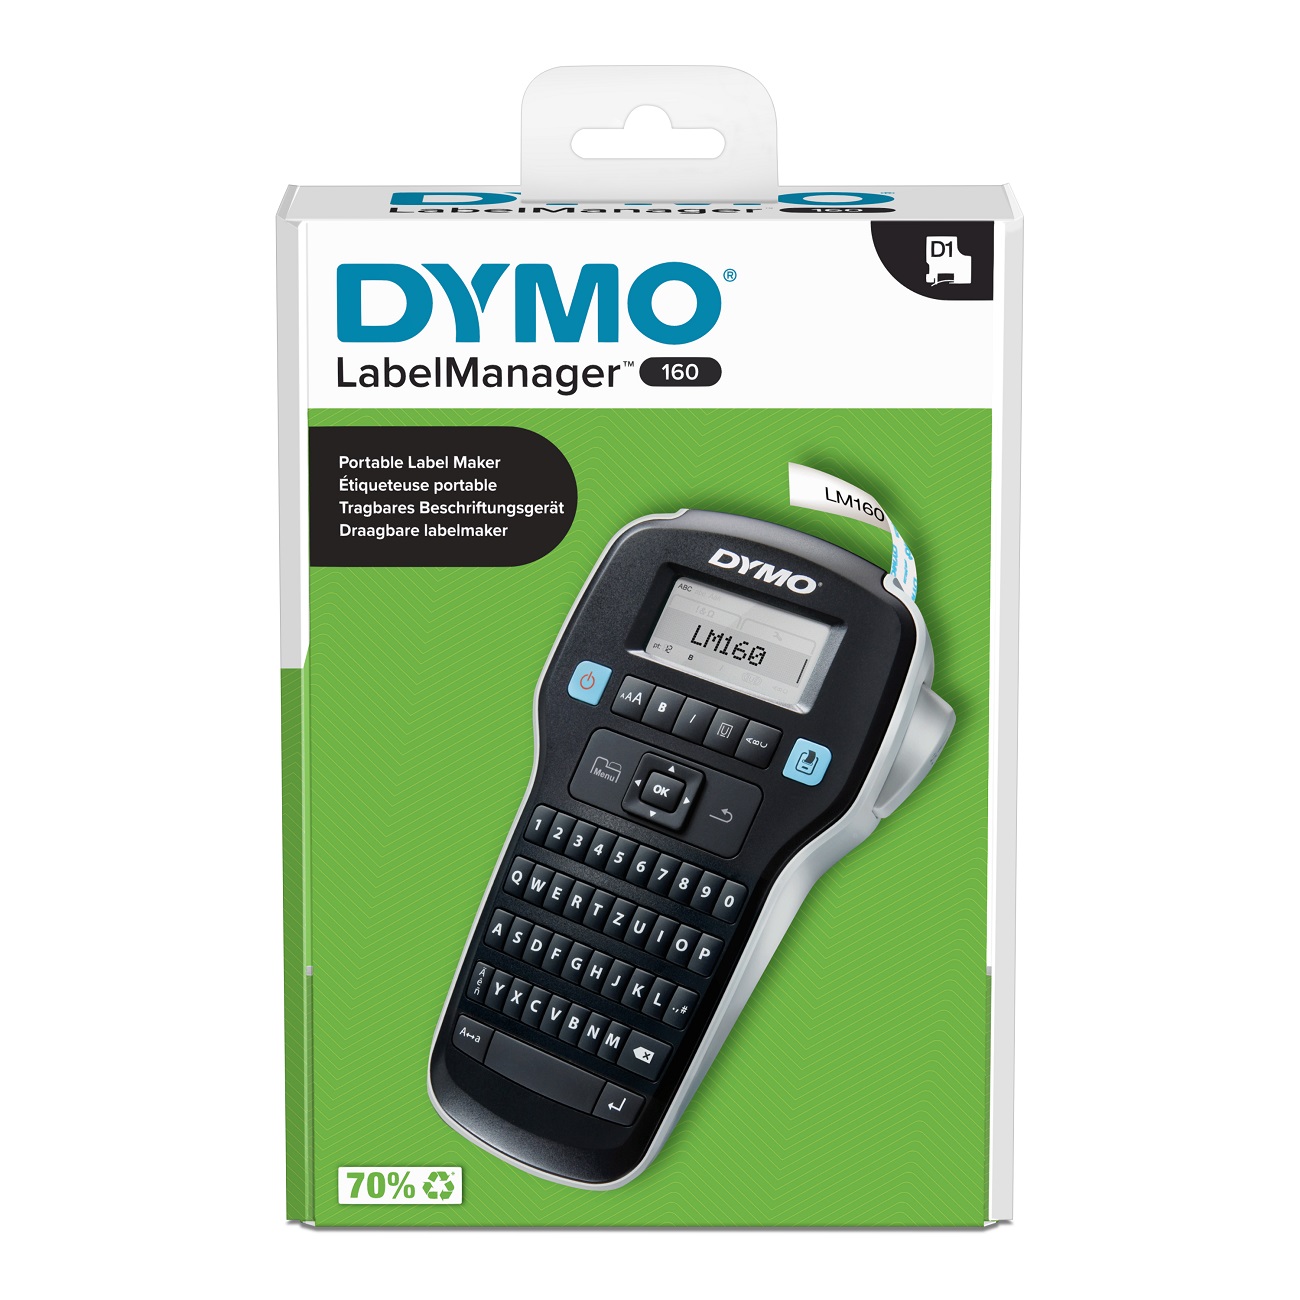 Dymo 2174611, Etikettendrucker, DYMO LabelManager 160 mm 2174611 (BILD2)